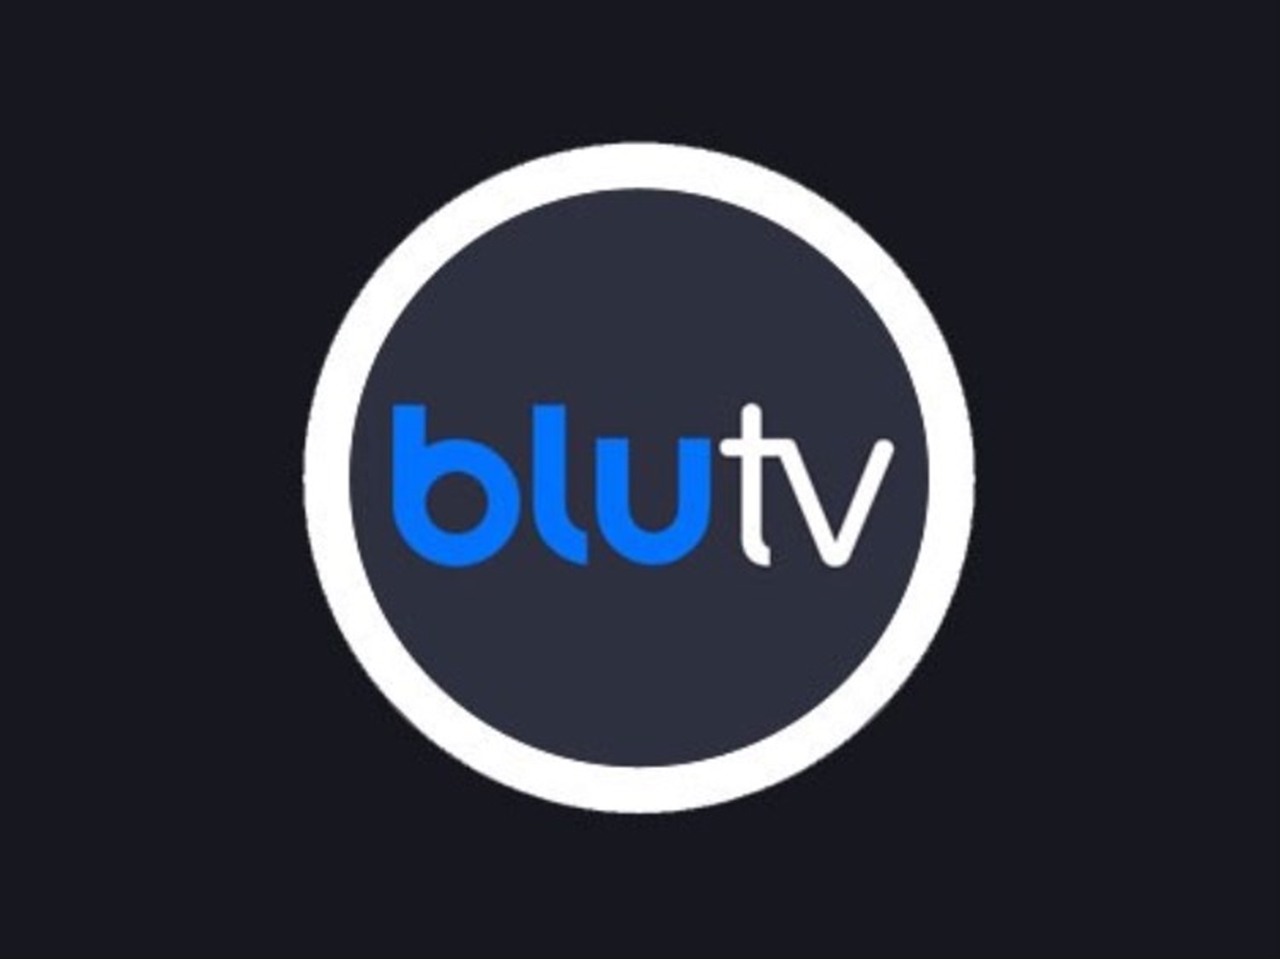 Dijital içerik platformlarından BluTV, Resmen satıldı